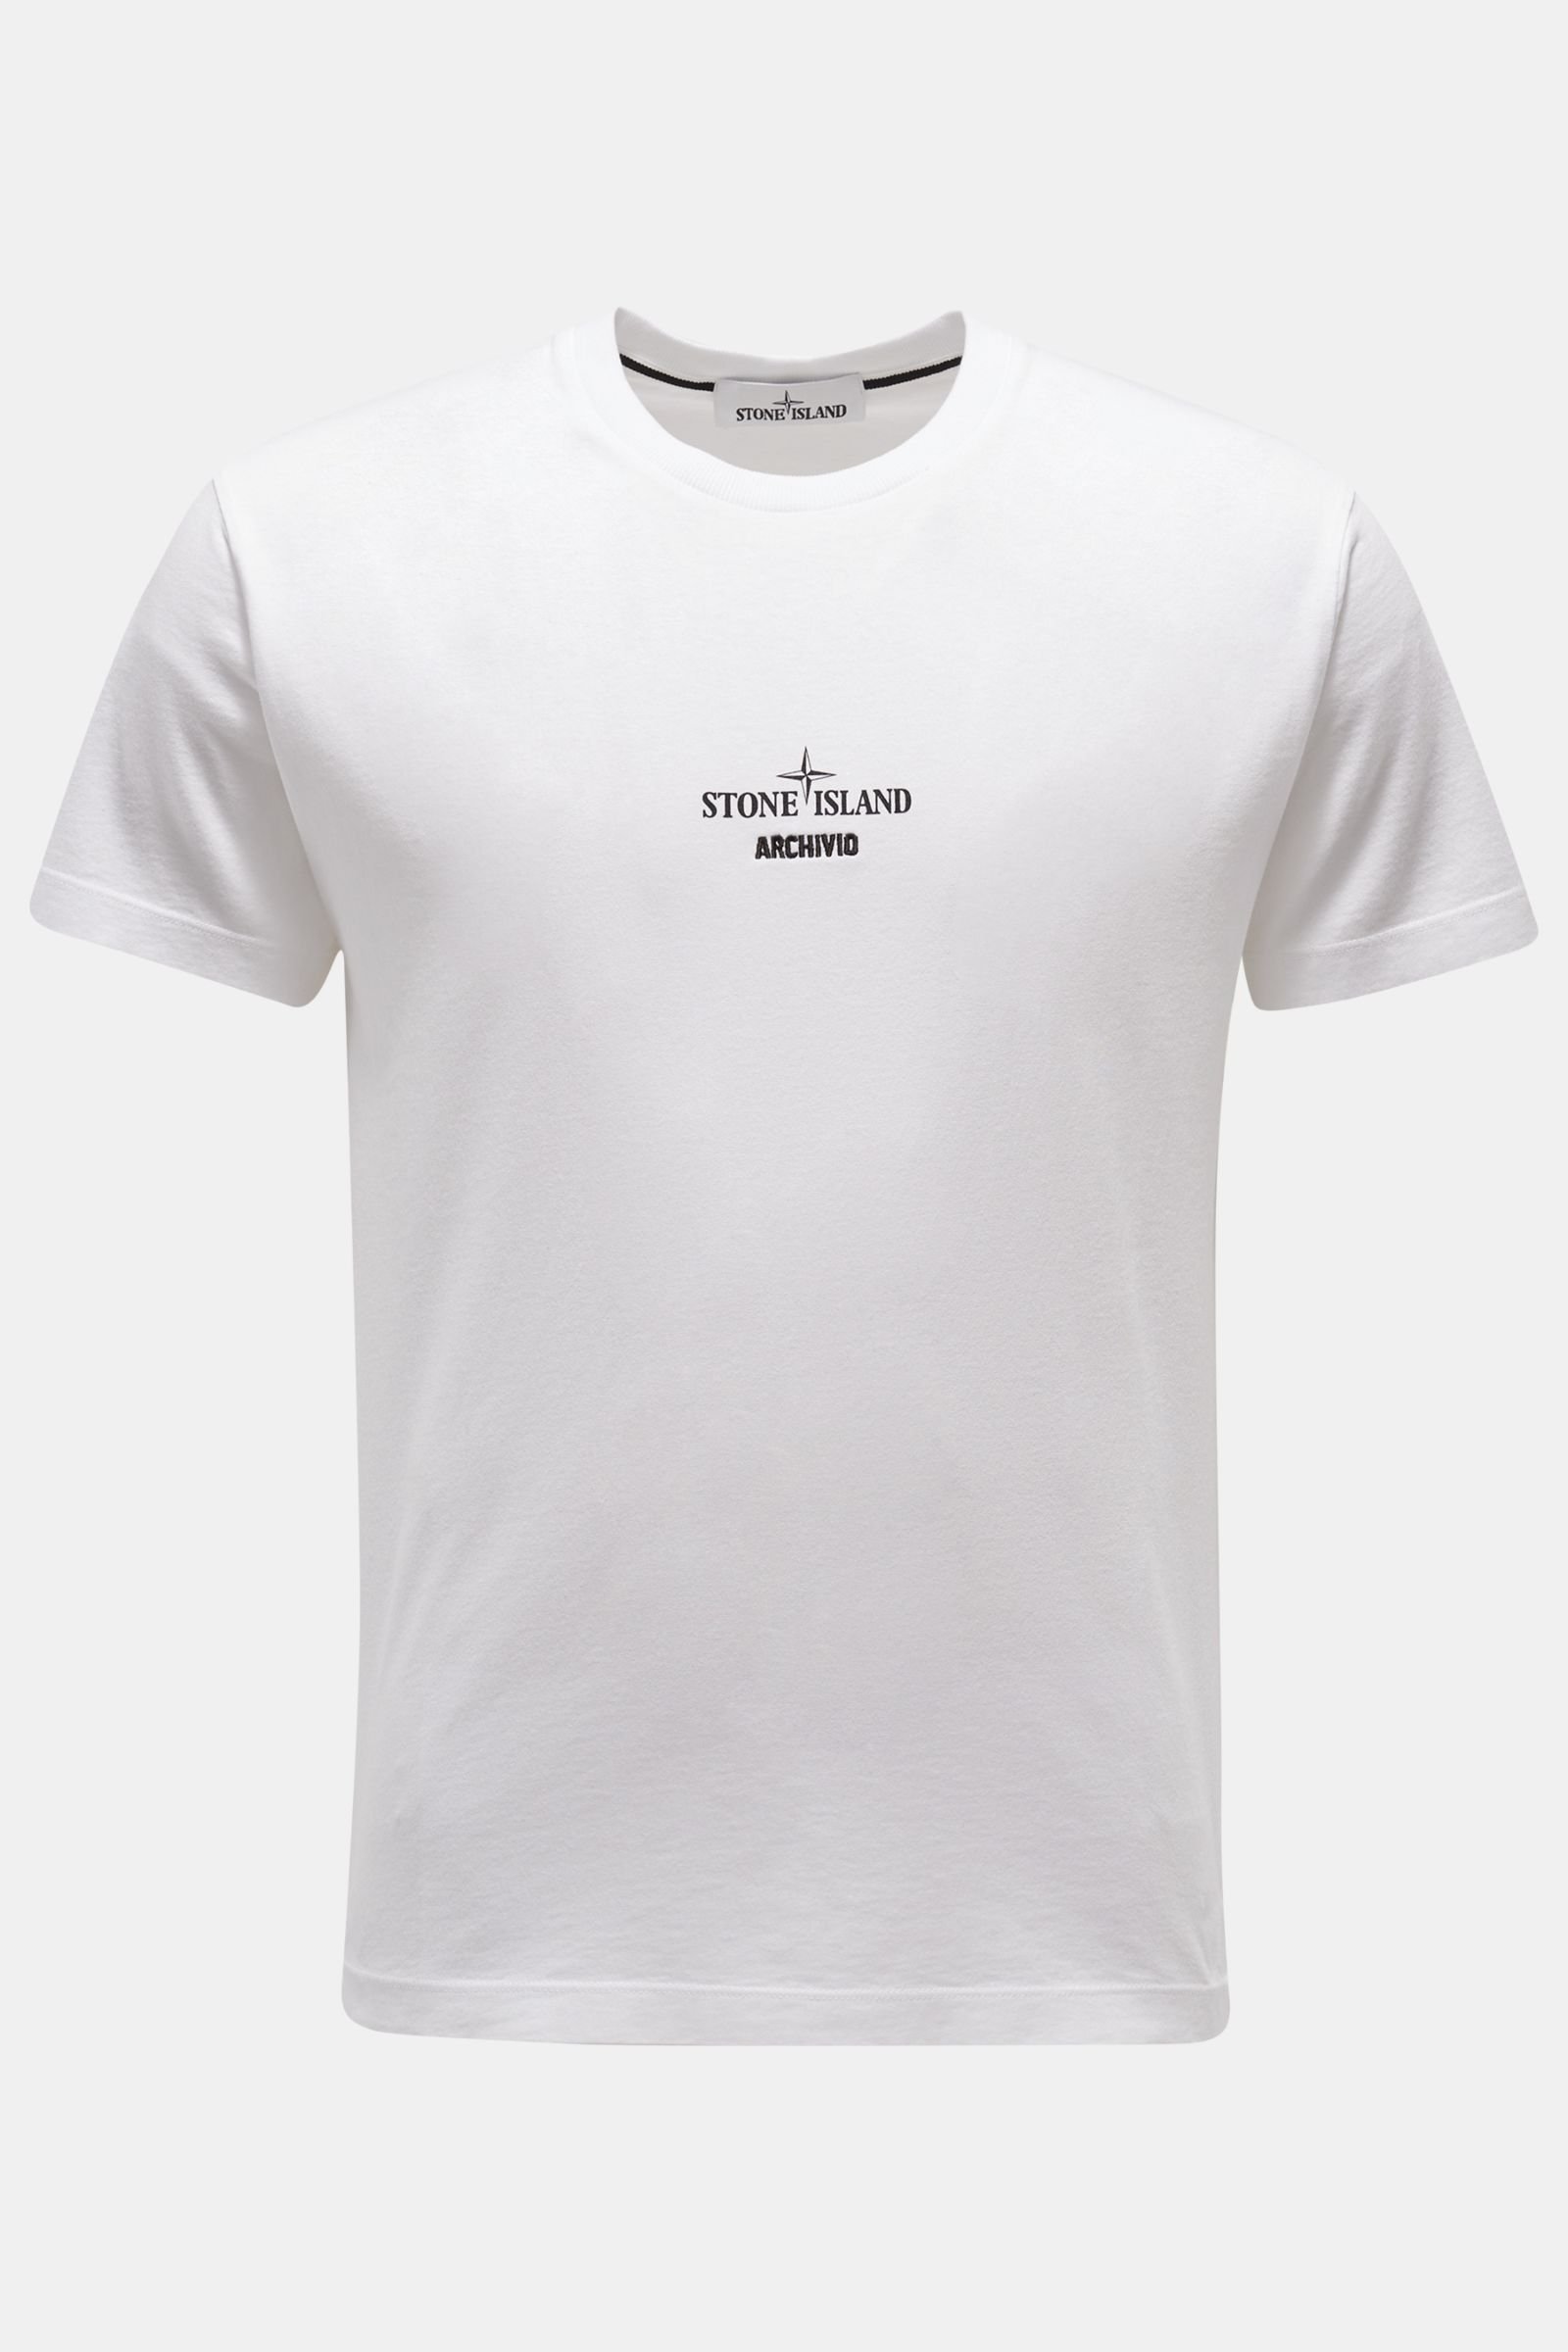 Rundhals-T-Shirt 'Archivio' weiß